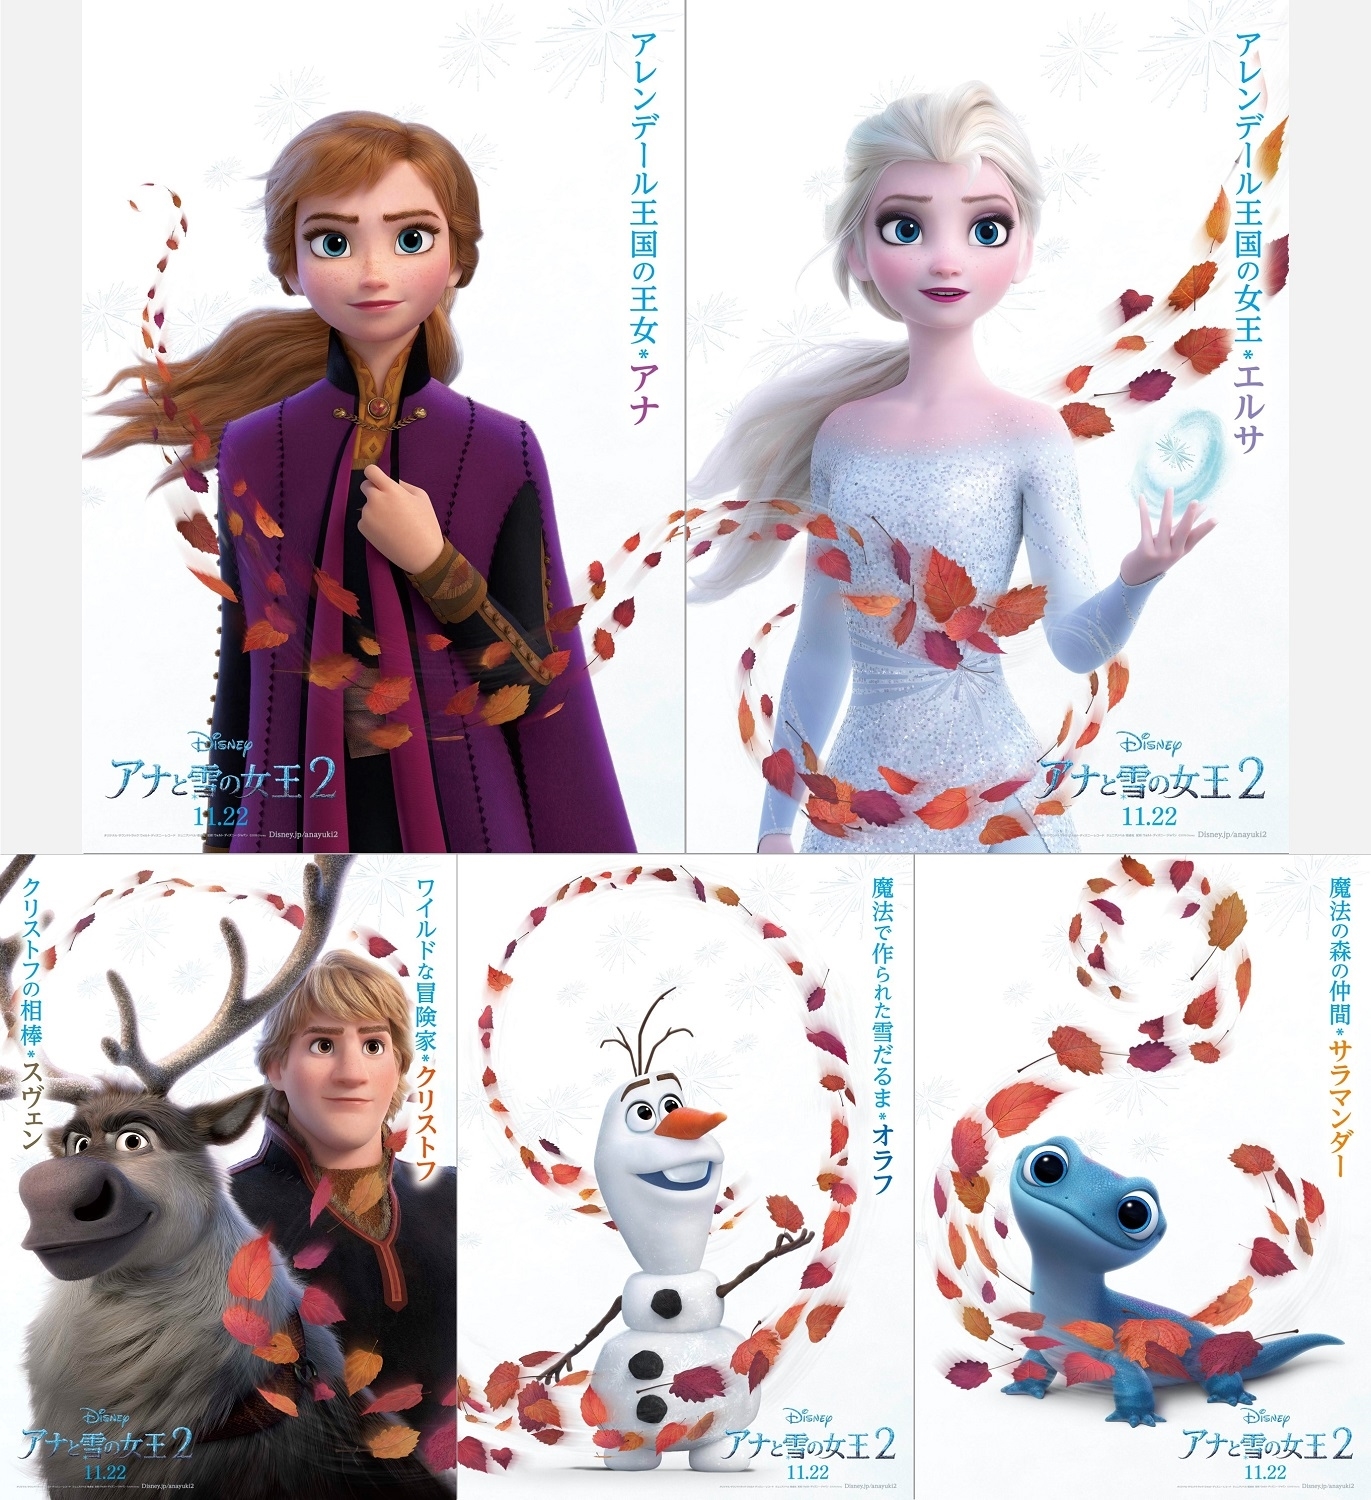 アナと雪の女王2 キャラクターポスター5種が解禁 アニメイトタイムズ